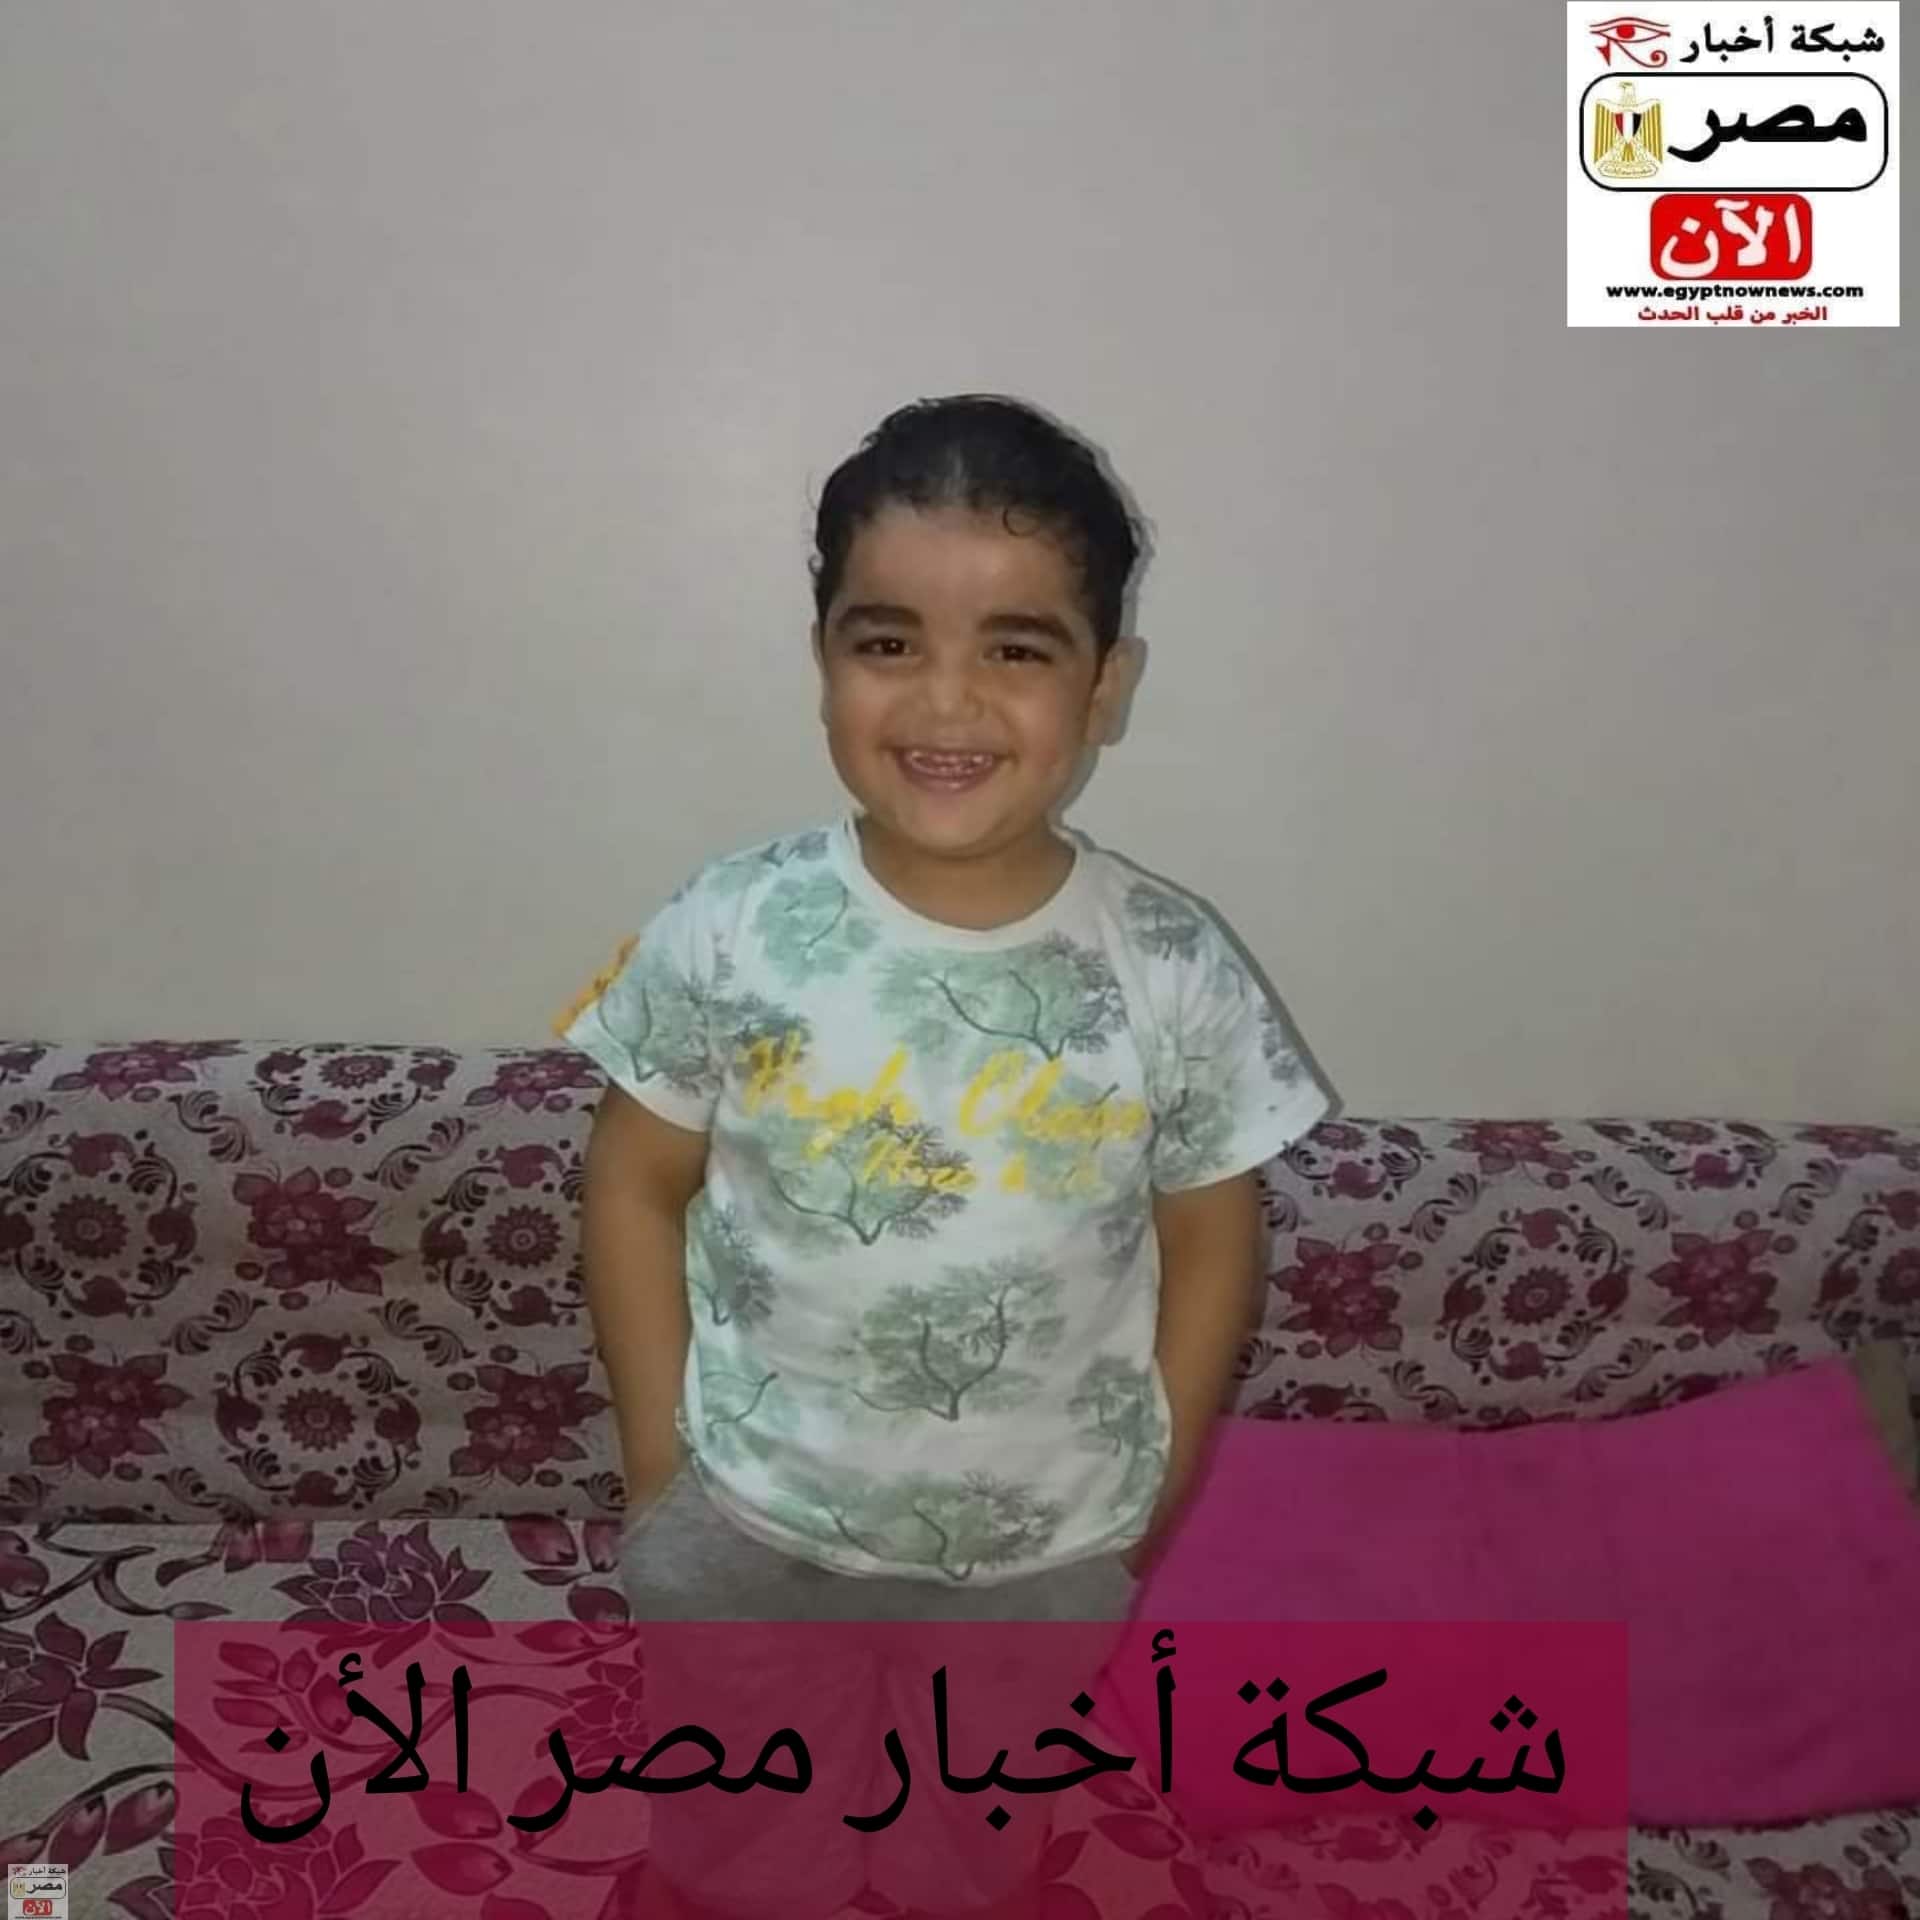 الطفل محمد إيهاب يستغيث بكل المسئولين في مصر